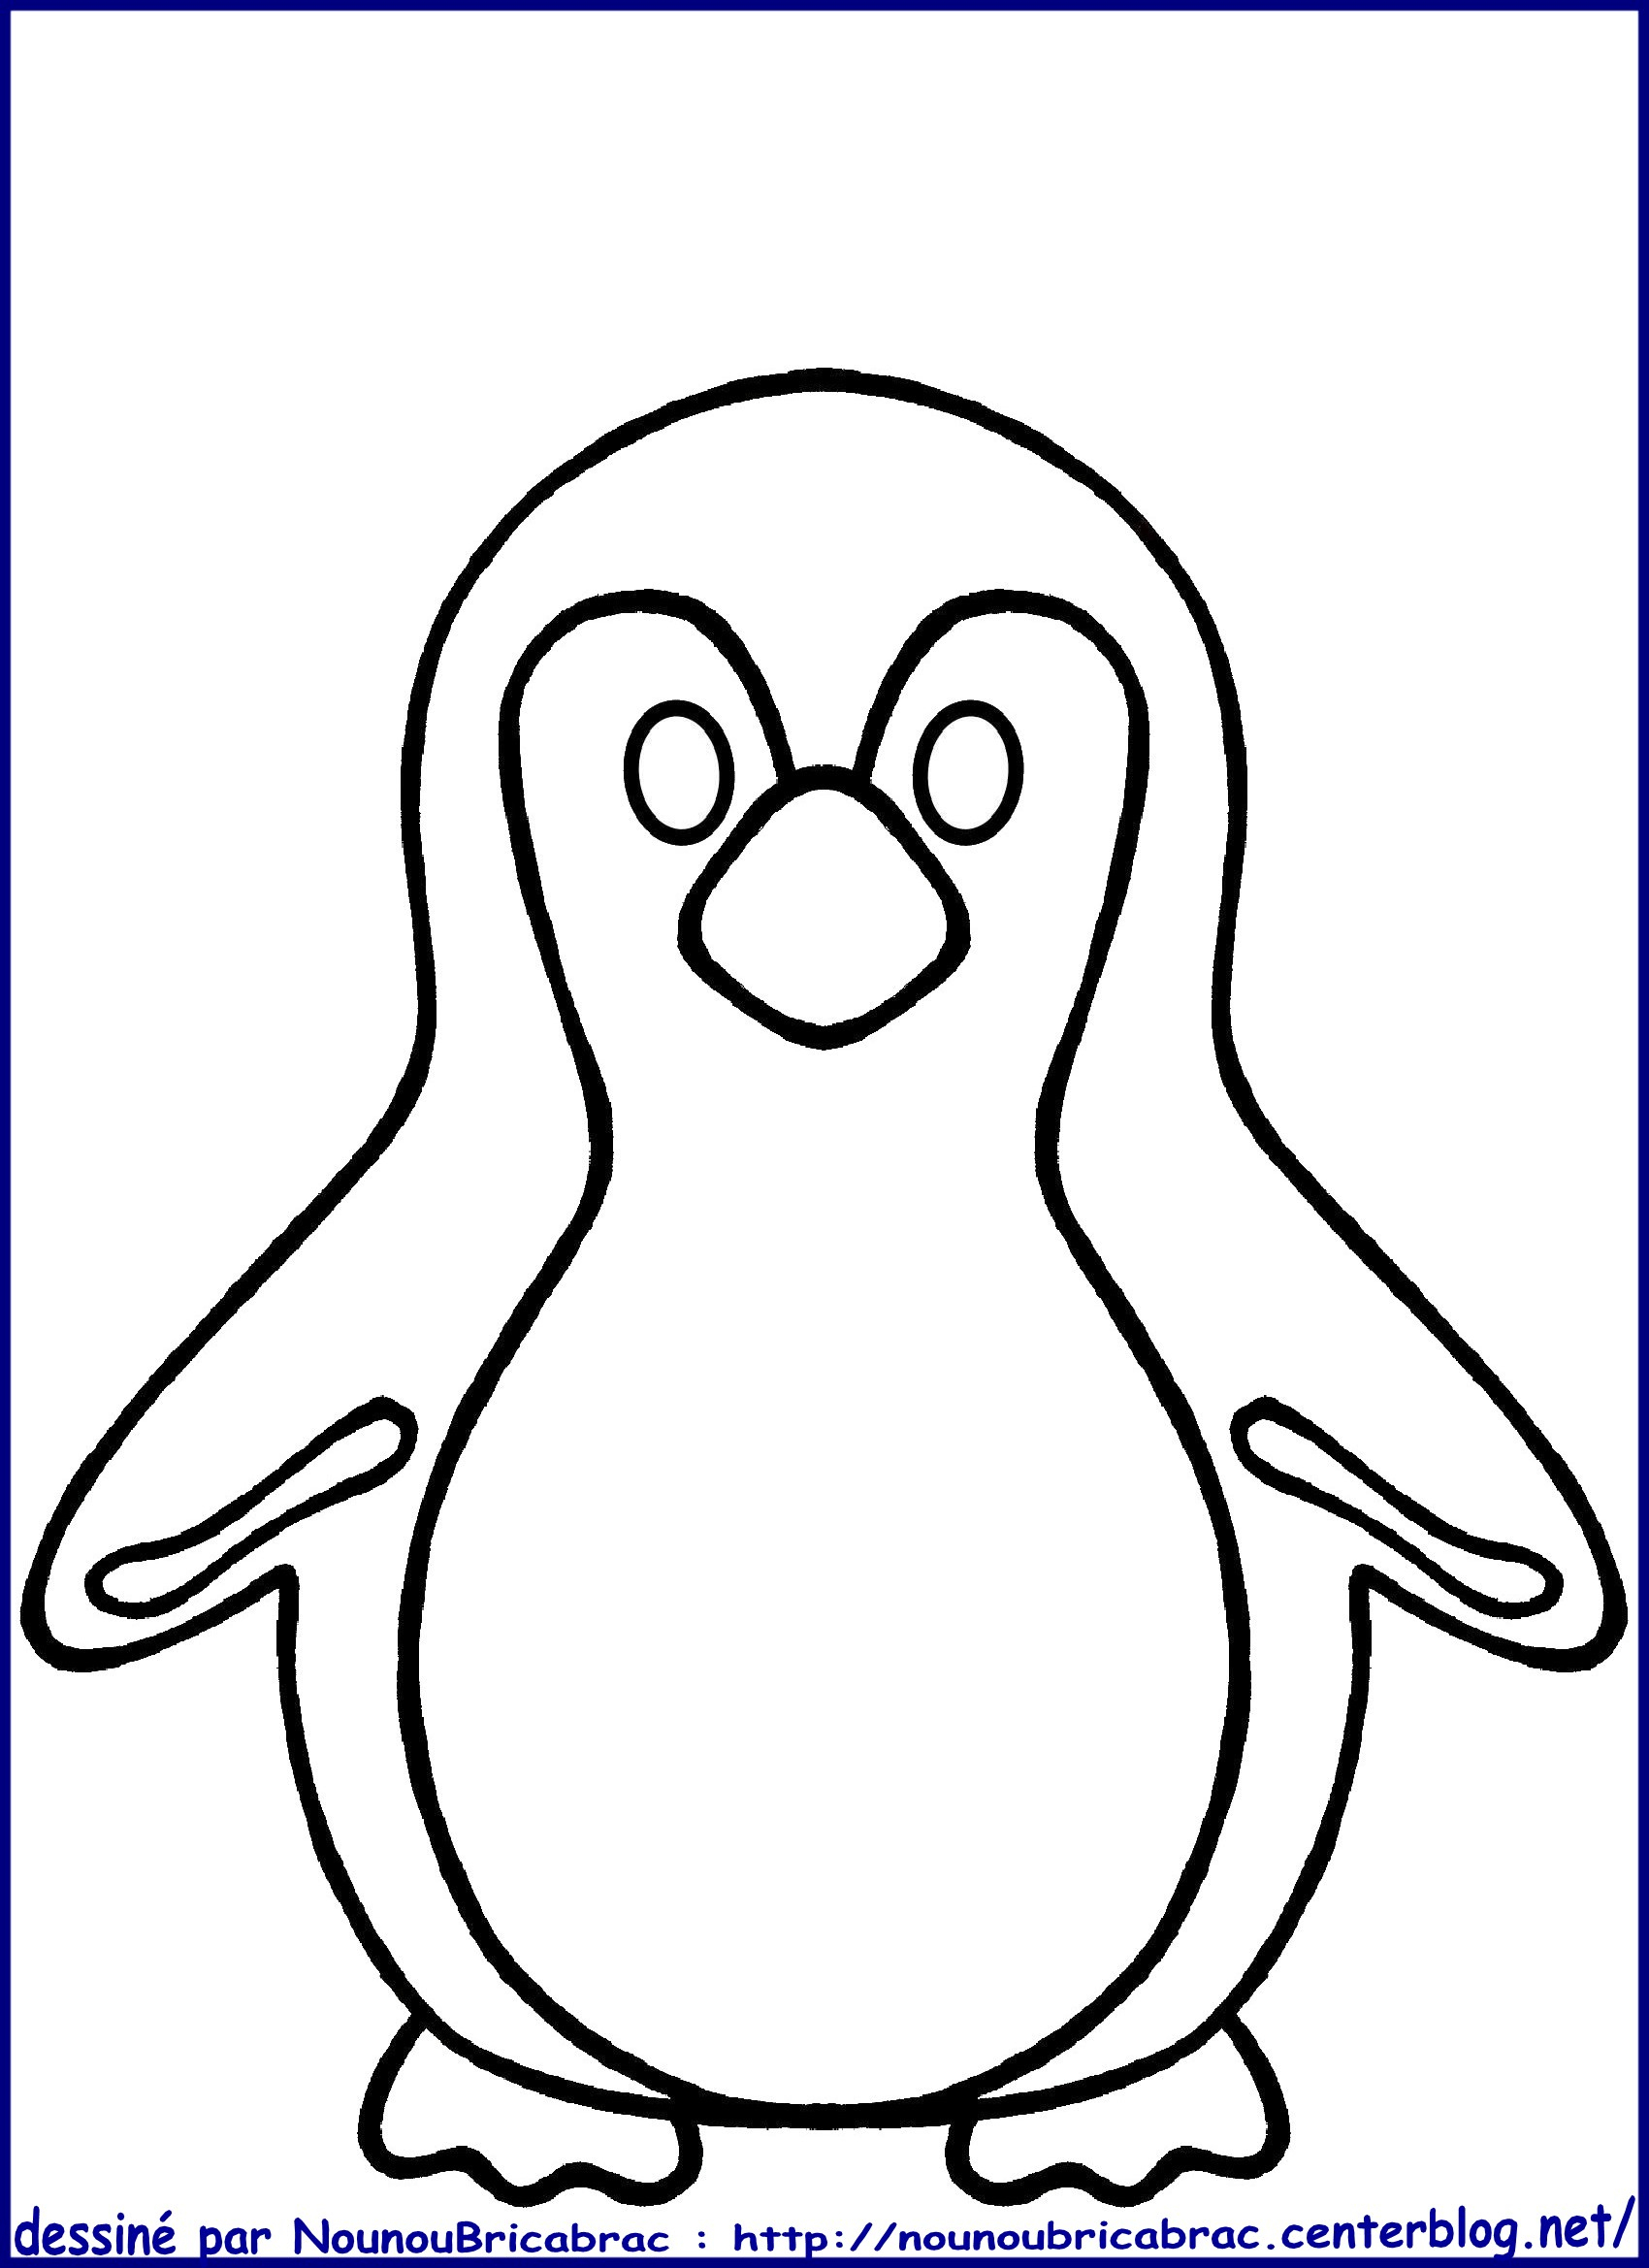 120 Dessins De Coloriage Pingouin À Imprimer concernant Modele De Dessin Gratuit